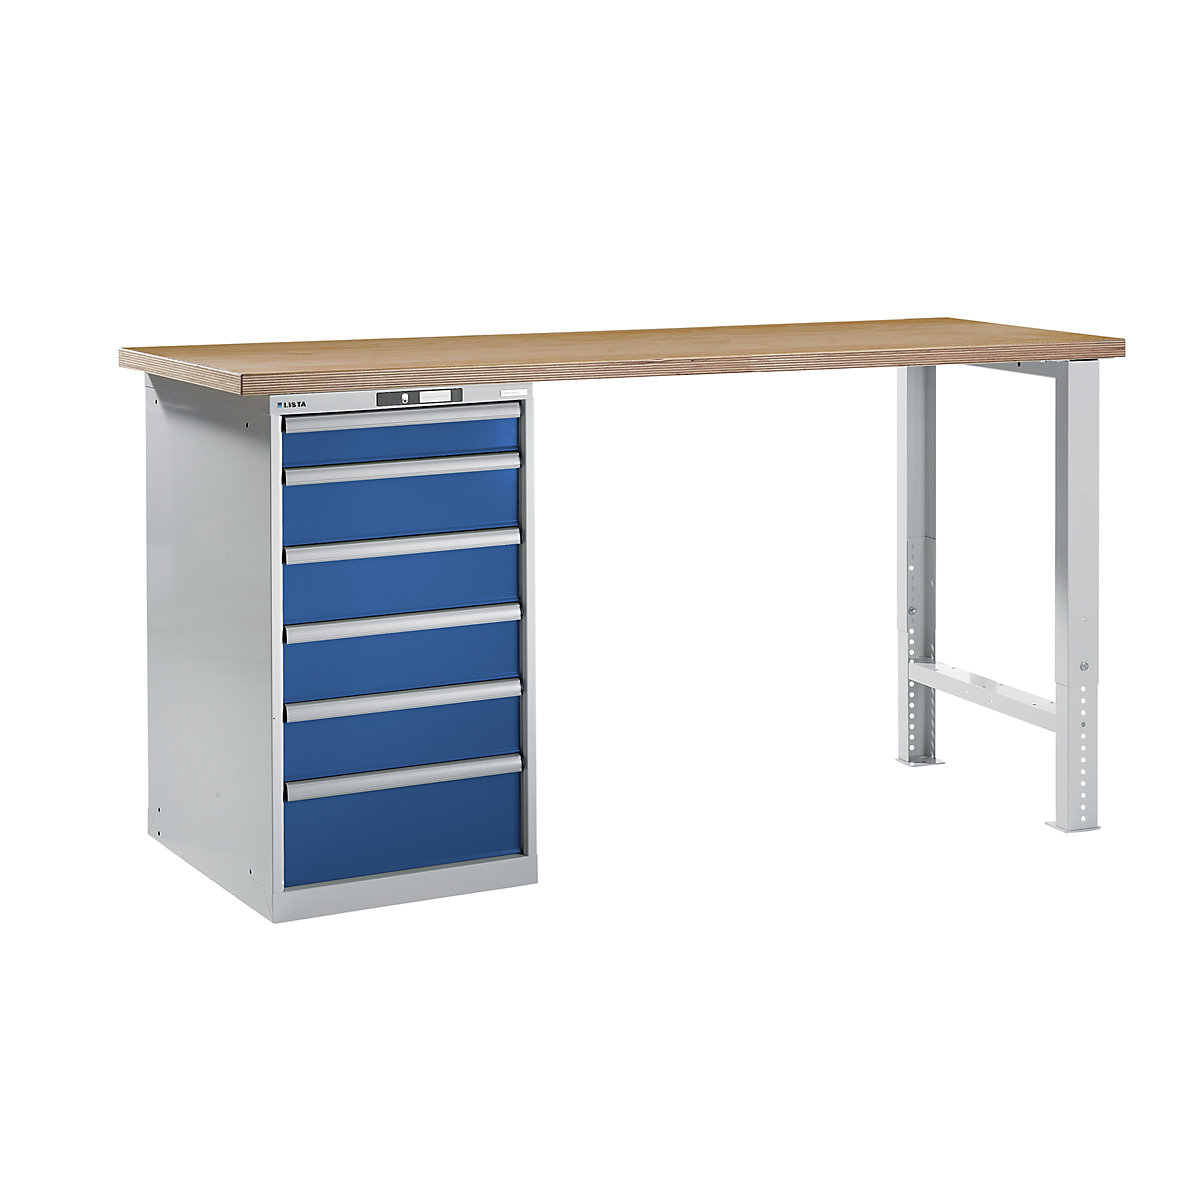 LISTA – Radna klupa kao modularni sustav, visina 1040 mm, ormar za postavljanje ispod stola, 6 ladice, u encijan plavoj boji, širina stola 2000 mm